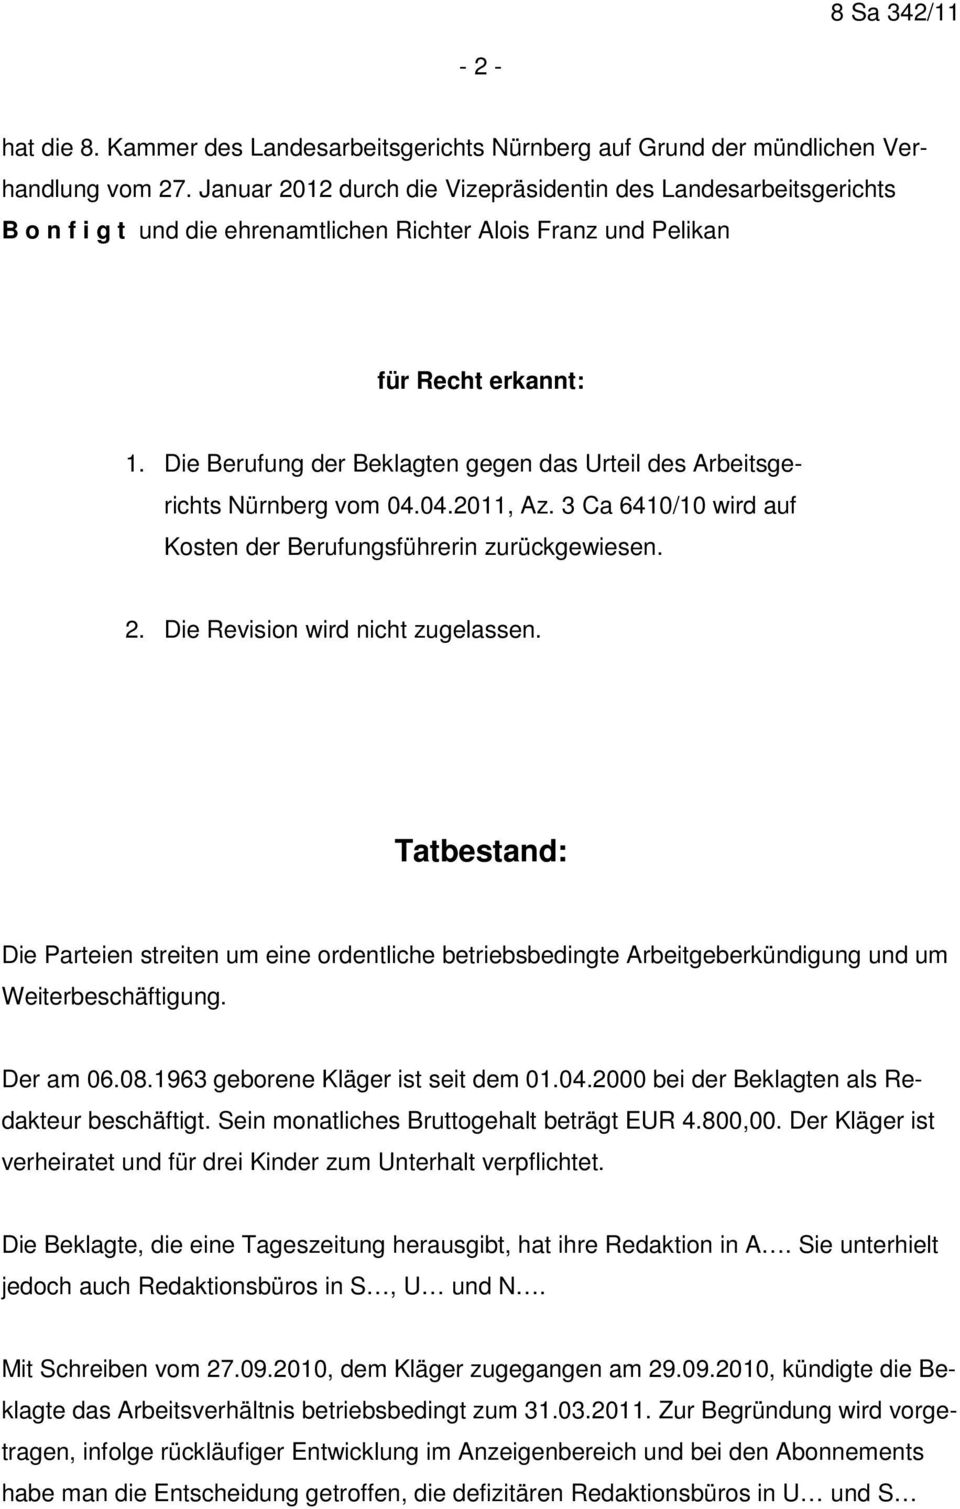 Die Berufung der Beklagten gegen das Urteil des Arbeitsgerichts Nürnberg vom 04.04.2011, Az. 3 Ca 6410/10 wird auf Kosten der Berufungsführerin zurückgewiesen. 2. Die Revision wird nicht zugelassen.